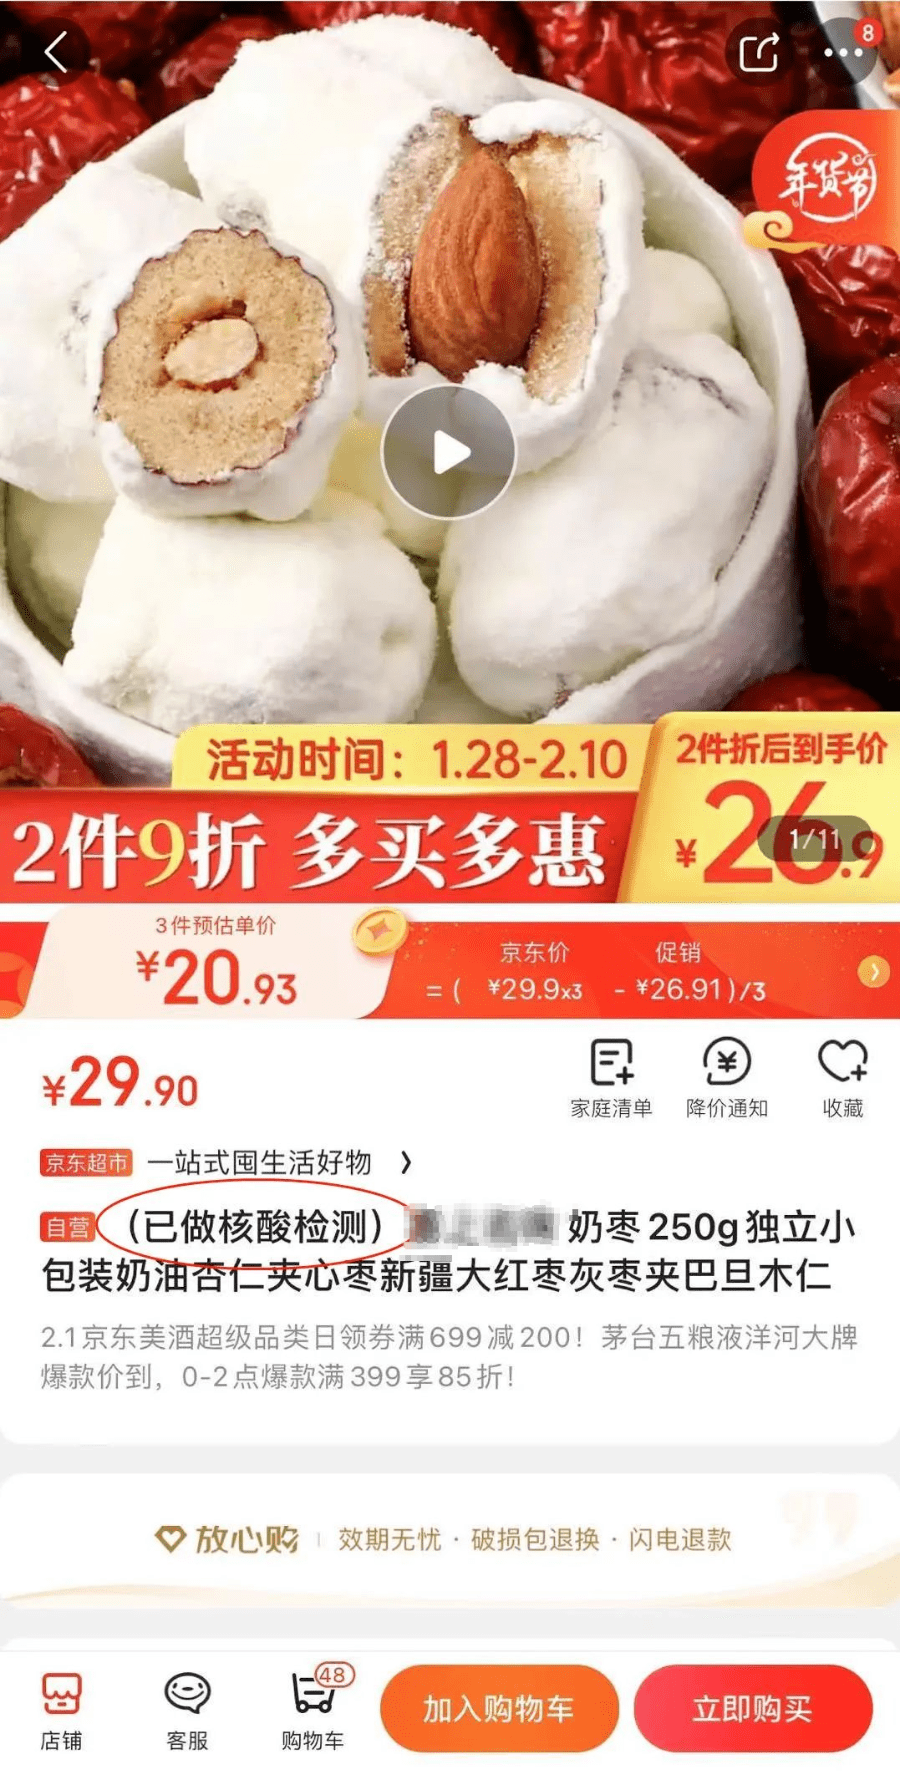 包括上海山东涉疫奶枣已流入20多个省市误吃了怎么办最新通报↗